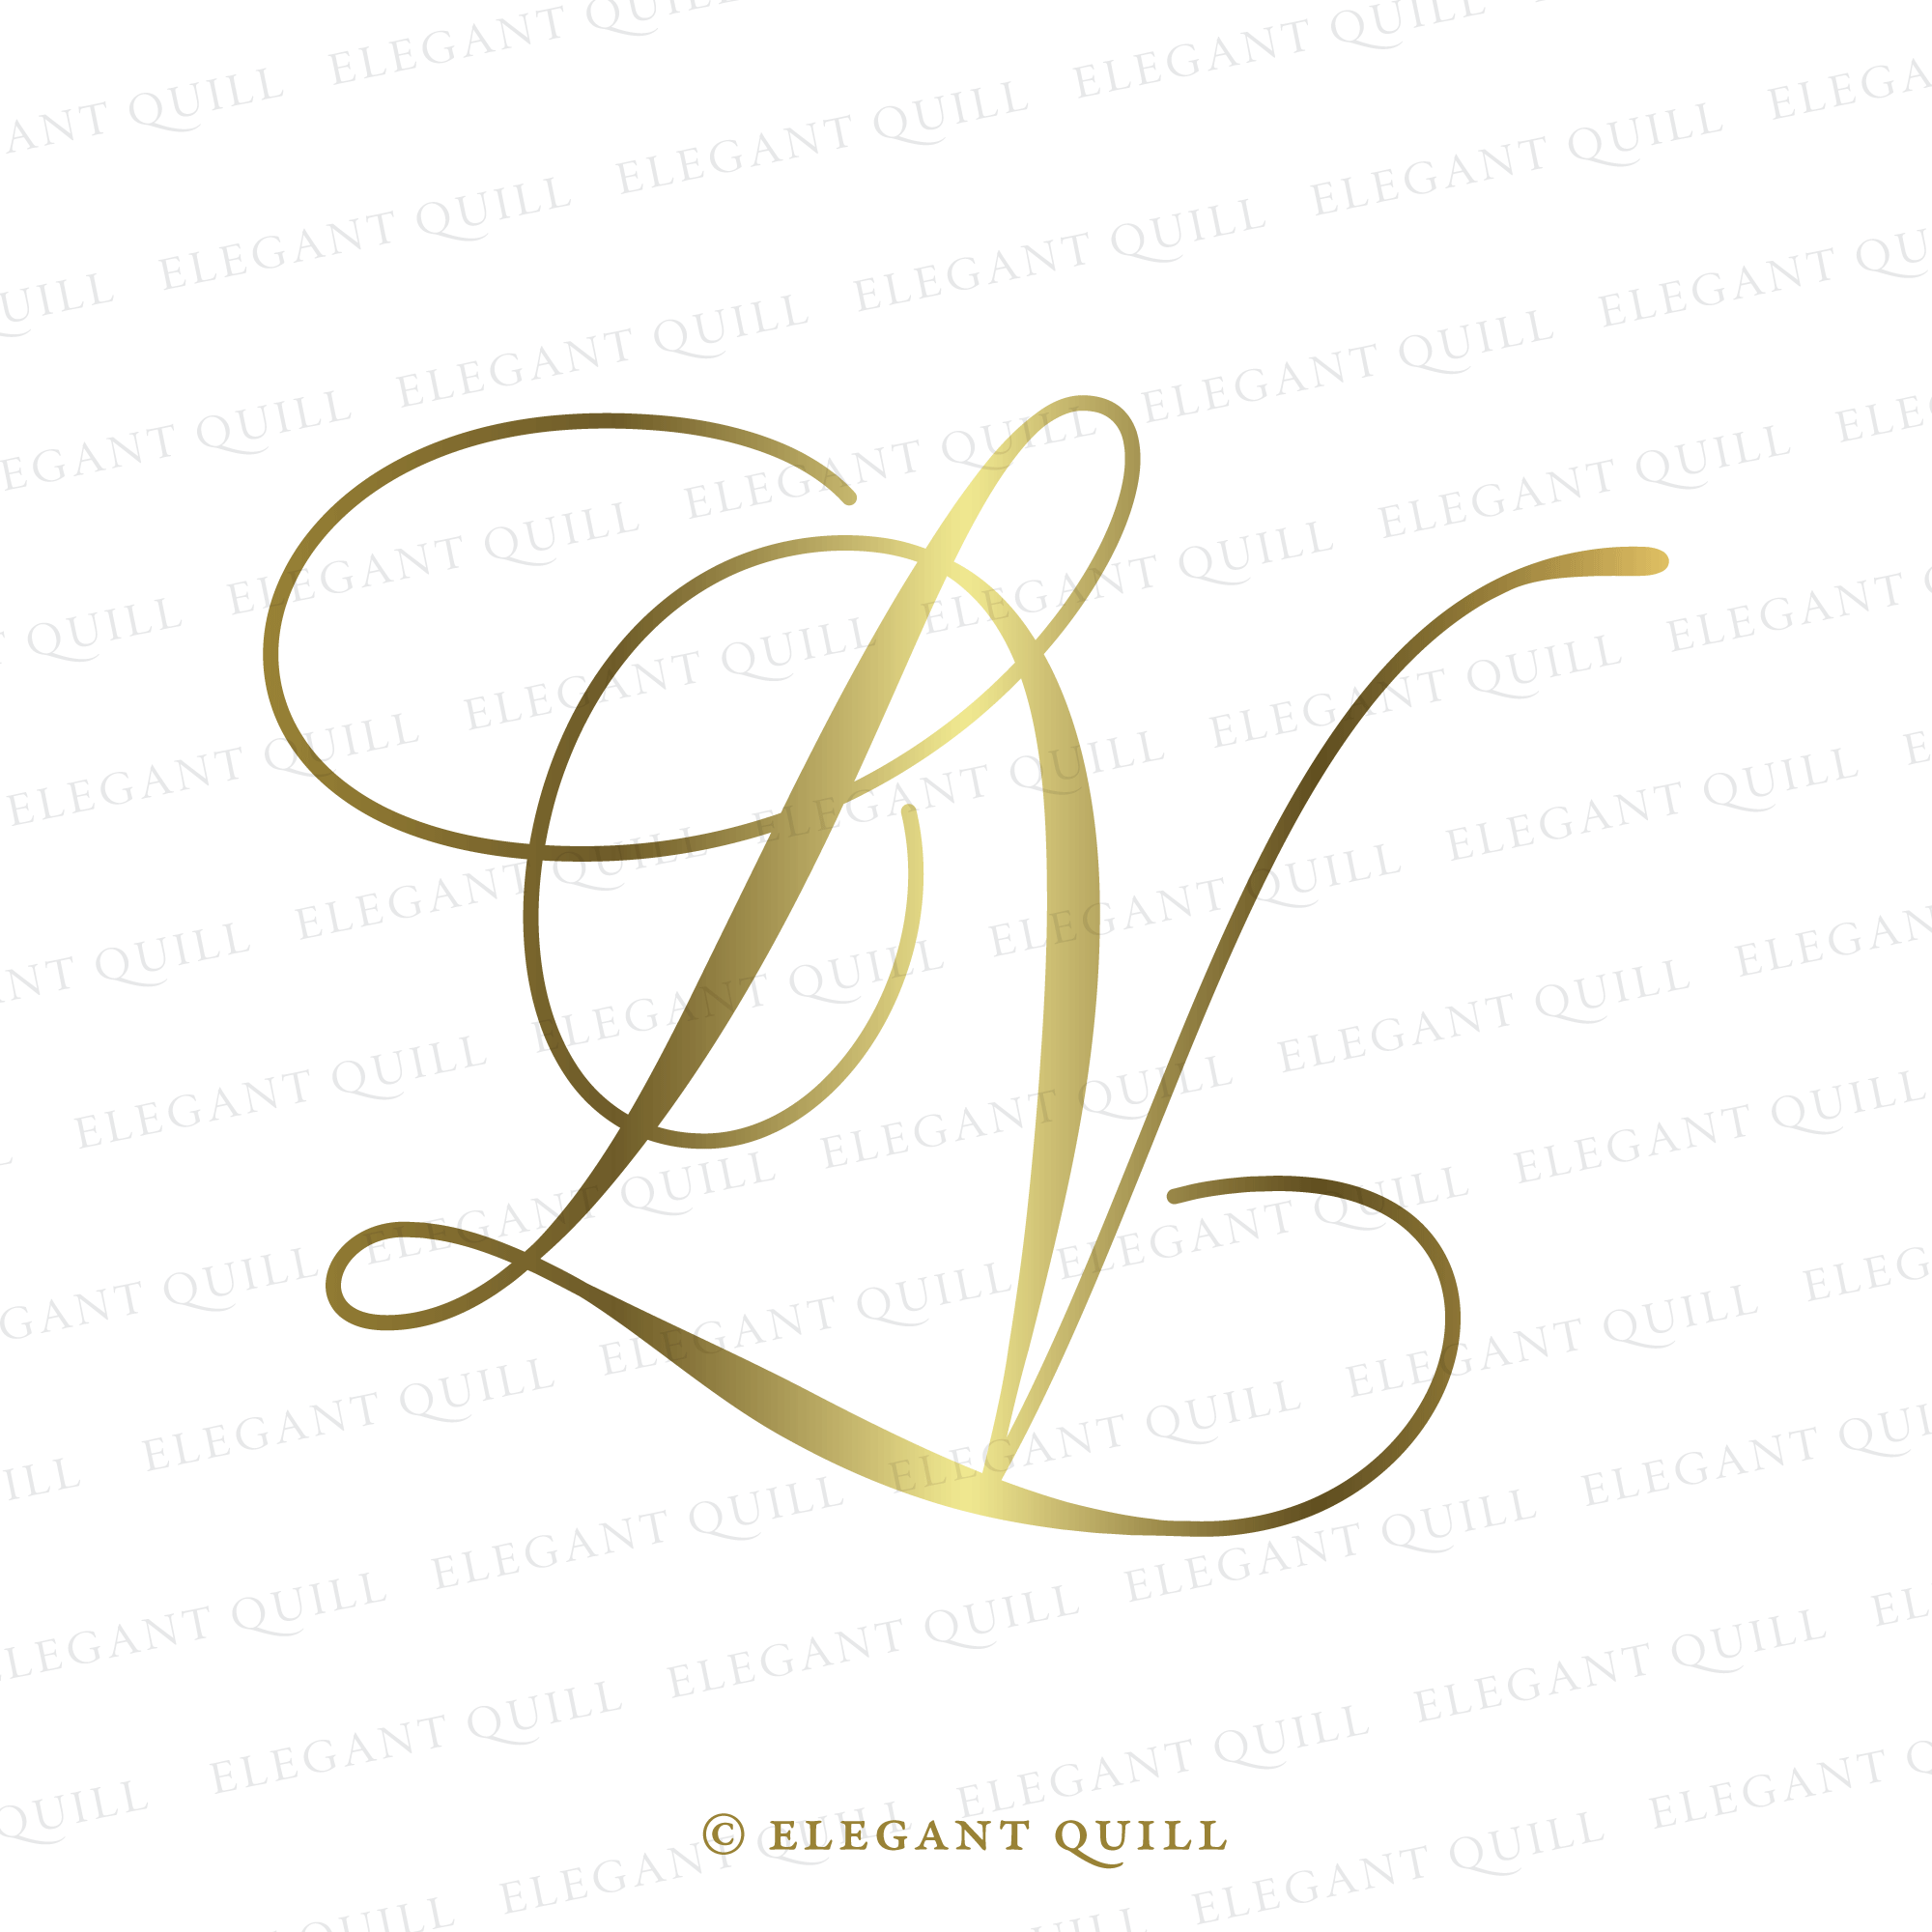 lv logo gold